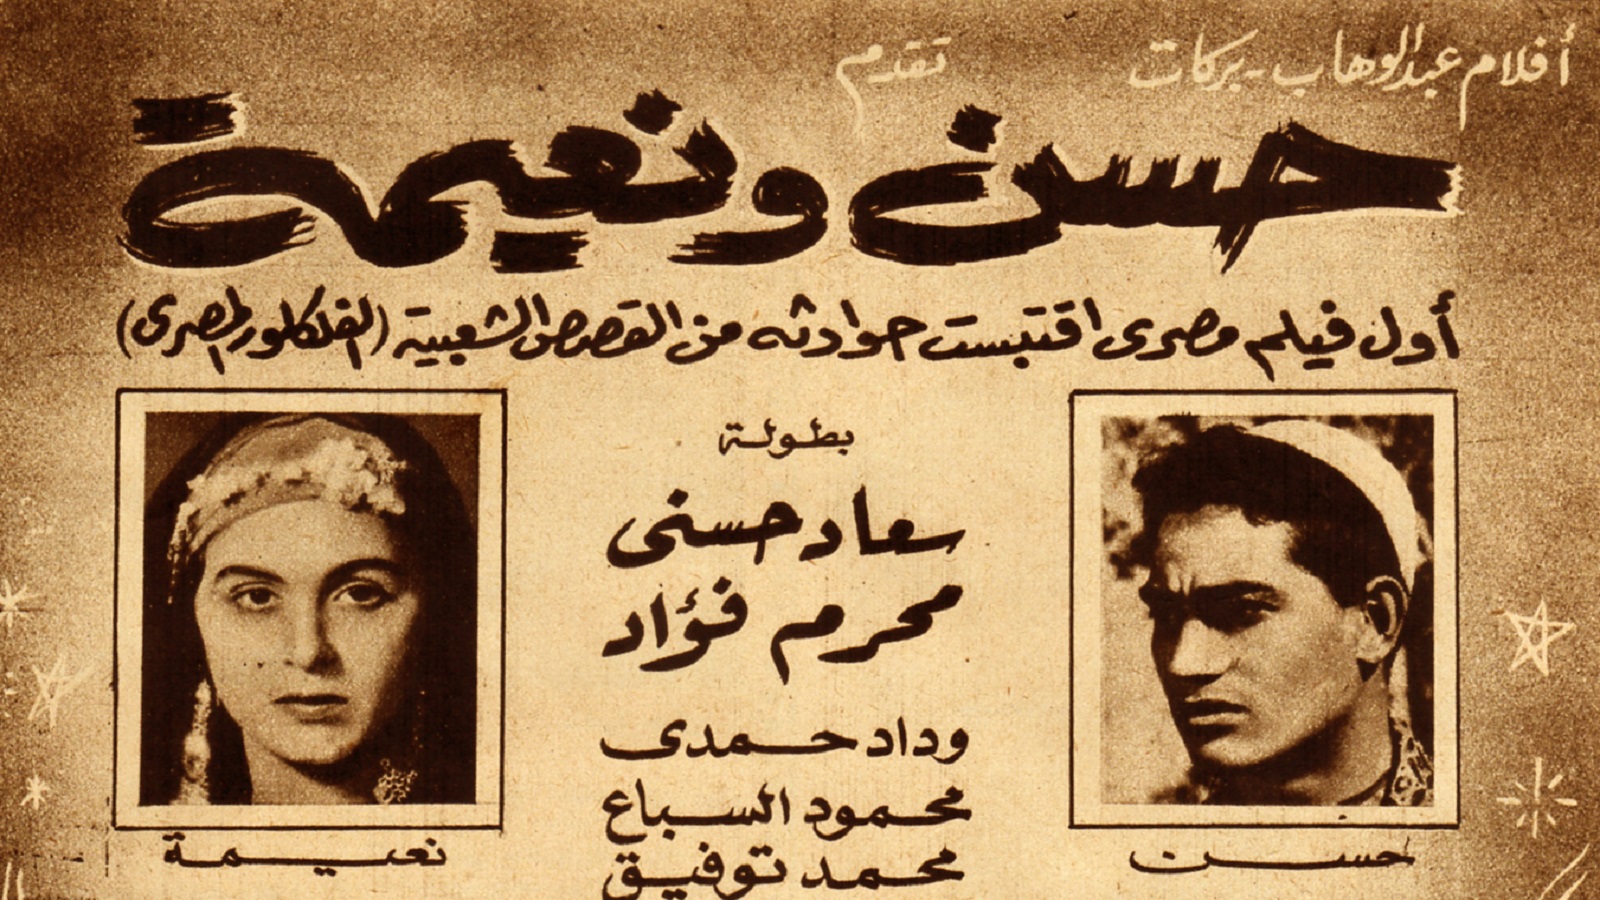 - الفيلم الأول "حسن ونعيمة"، 1959.